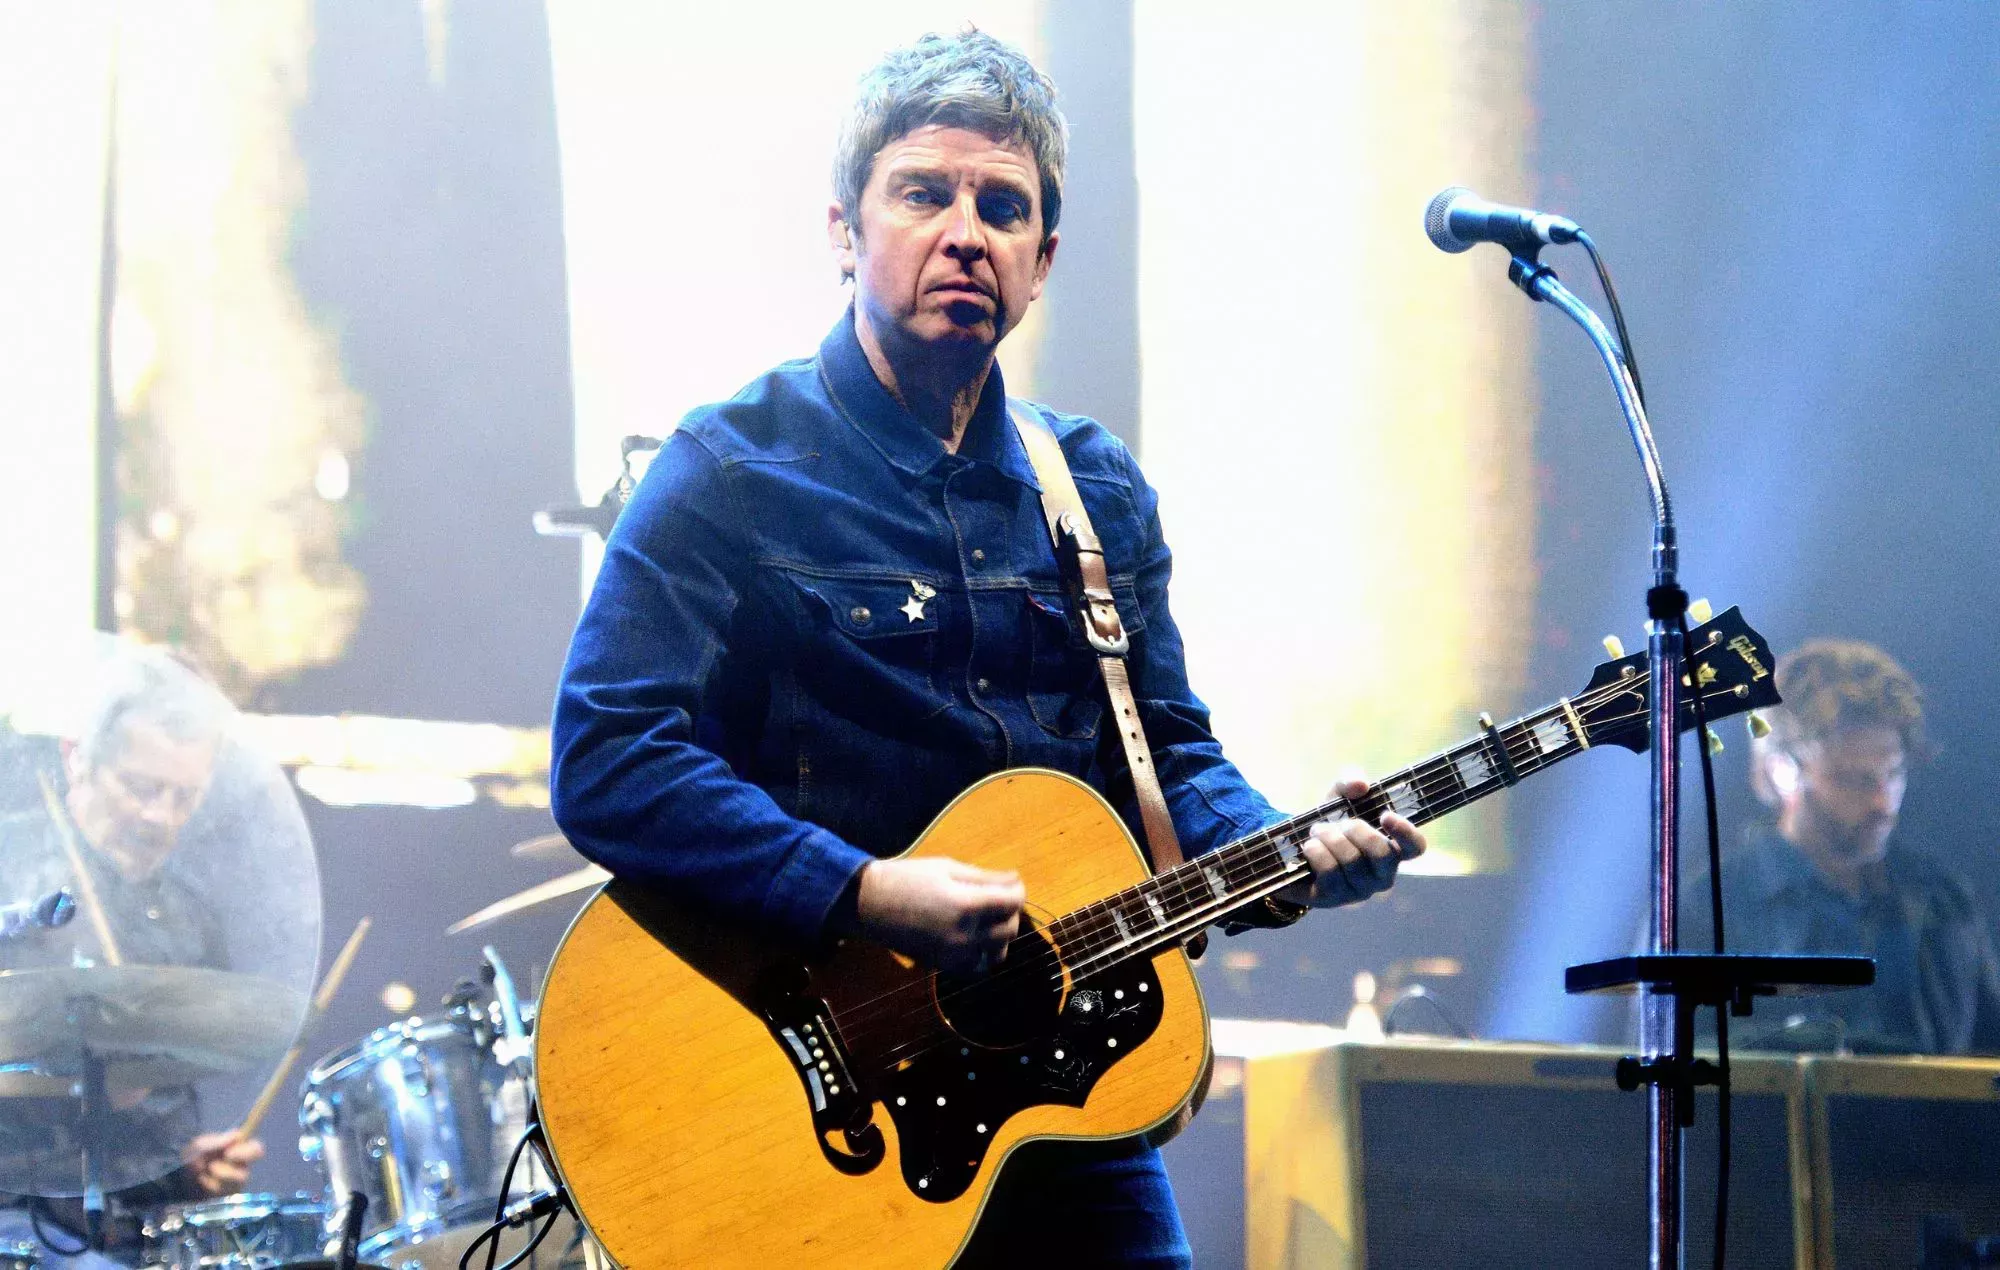 Noel Gallagher, seis meses de prohibición de conducir pese a no haber aprendido nunca a hacerlo